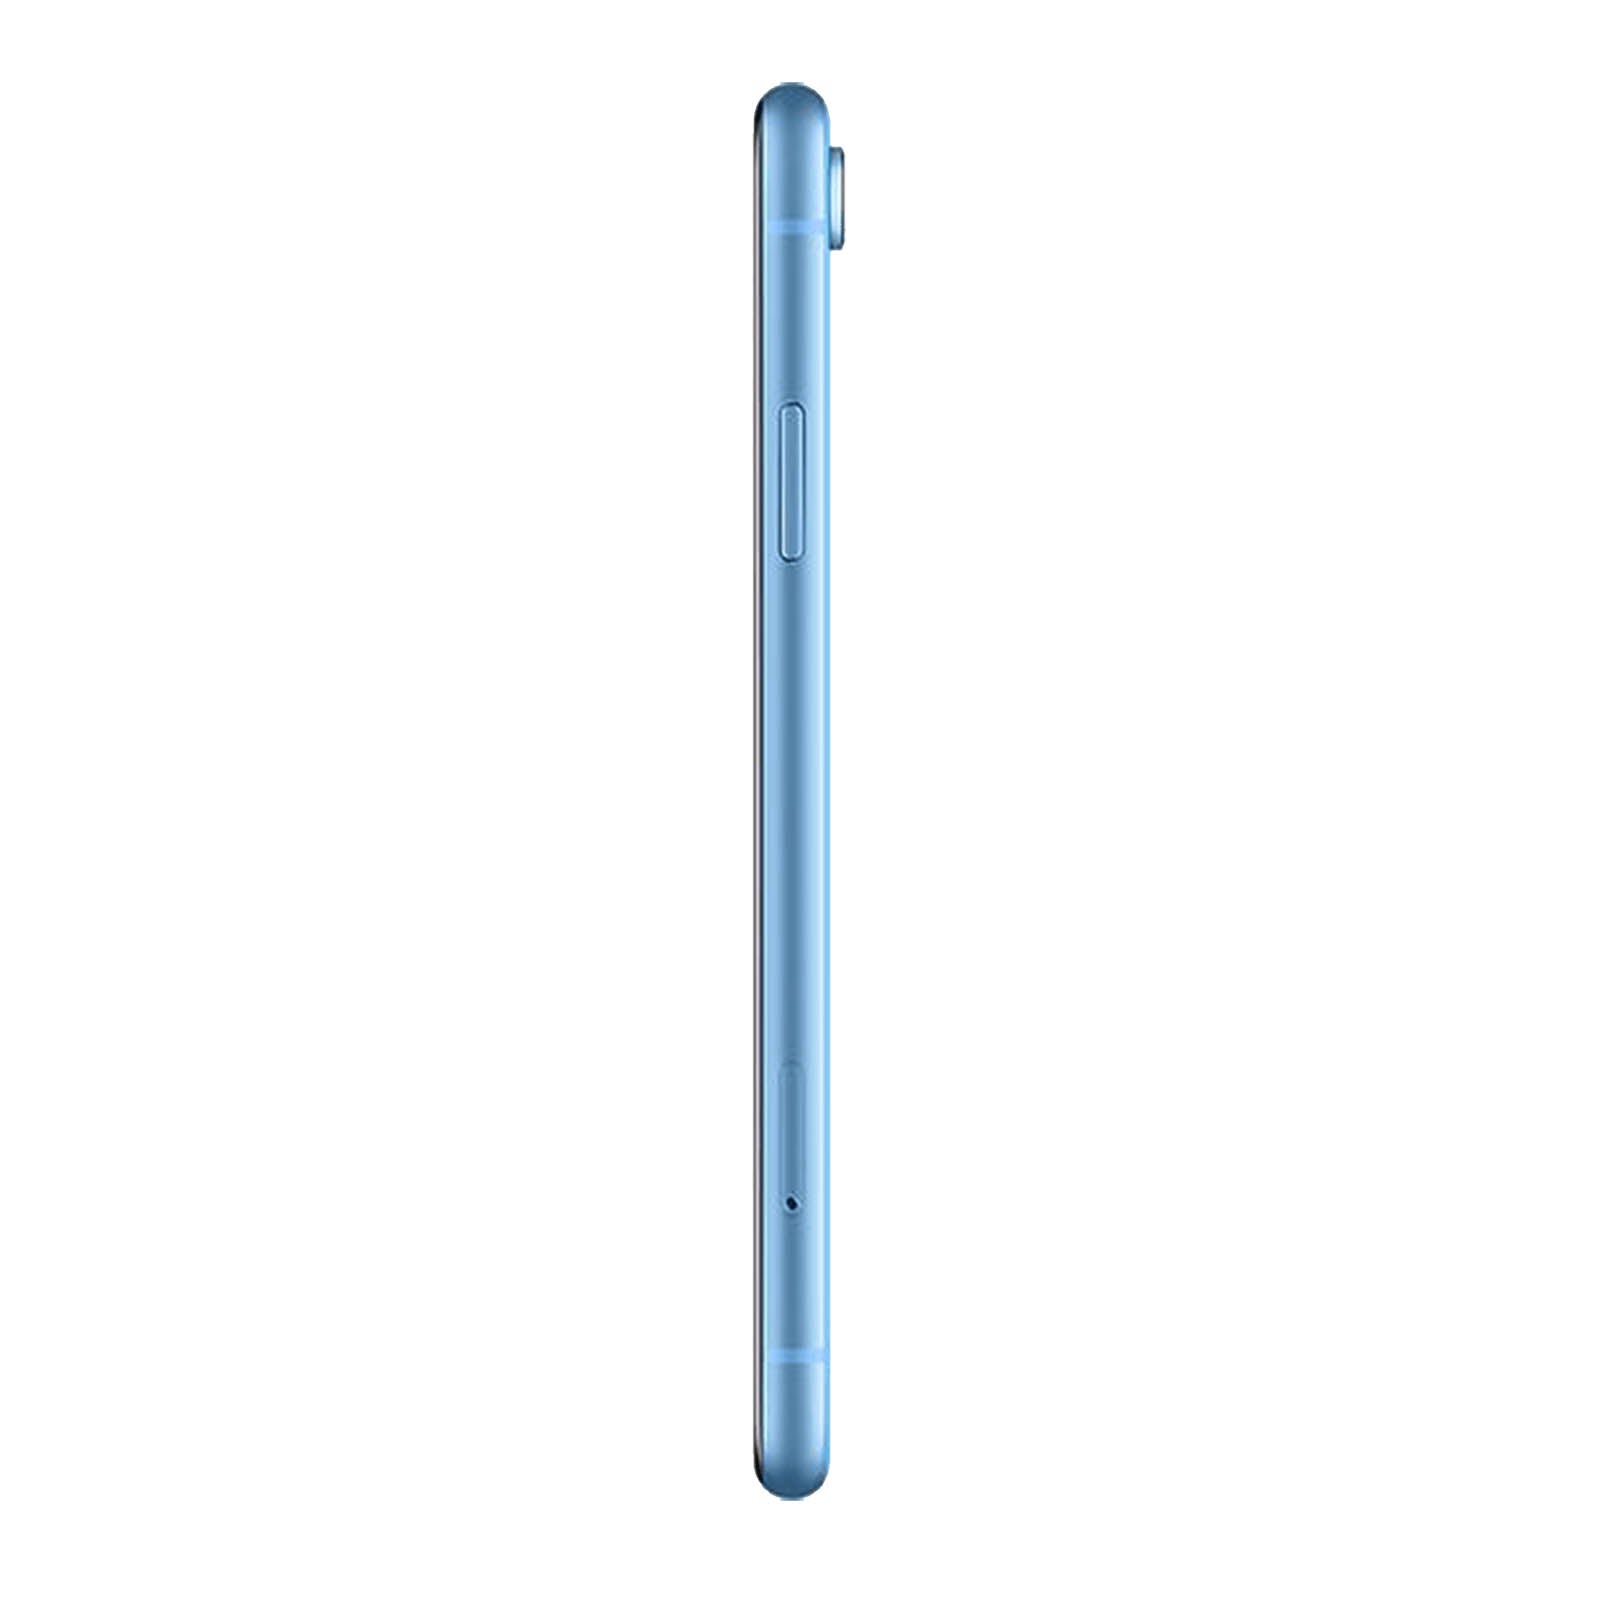 Apple iPhone XR 64GB Blue Fair - Verizon